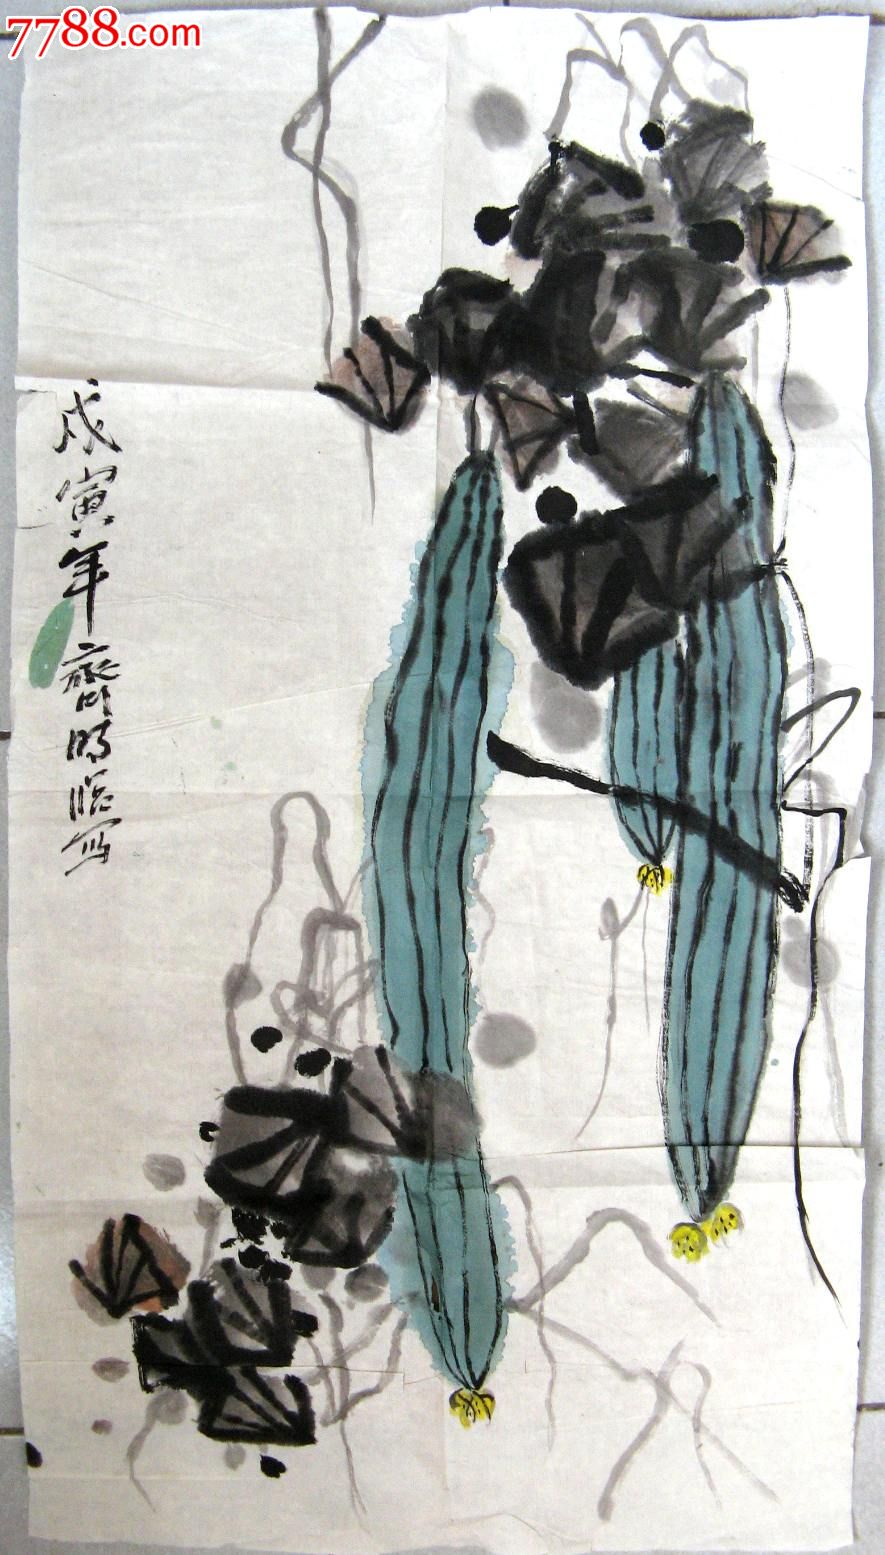 北京老画家近三尺条幅蔬果画:丝瓜-价格:20元-